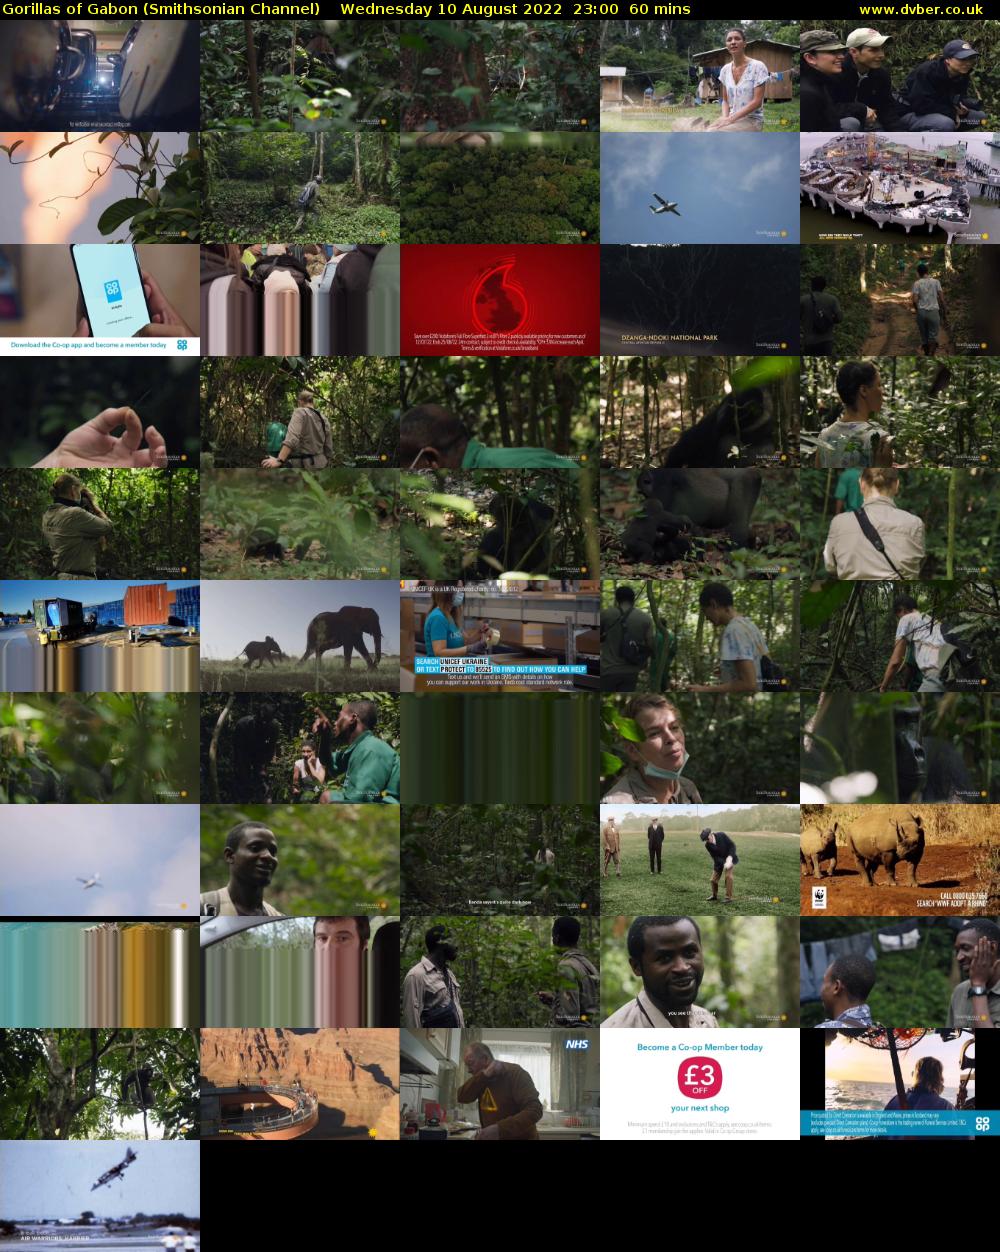 Gorillas of Gabon (Smithsonian Channel) Wednesday 10 August 2022 23:00 - 00:00